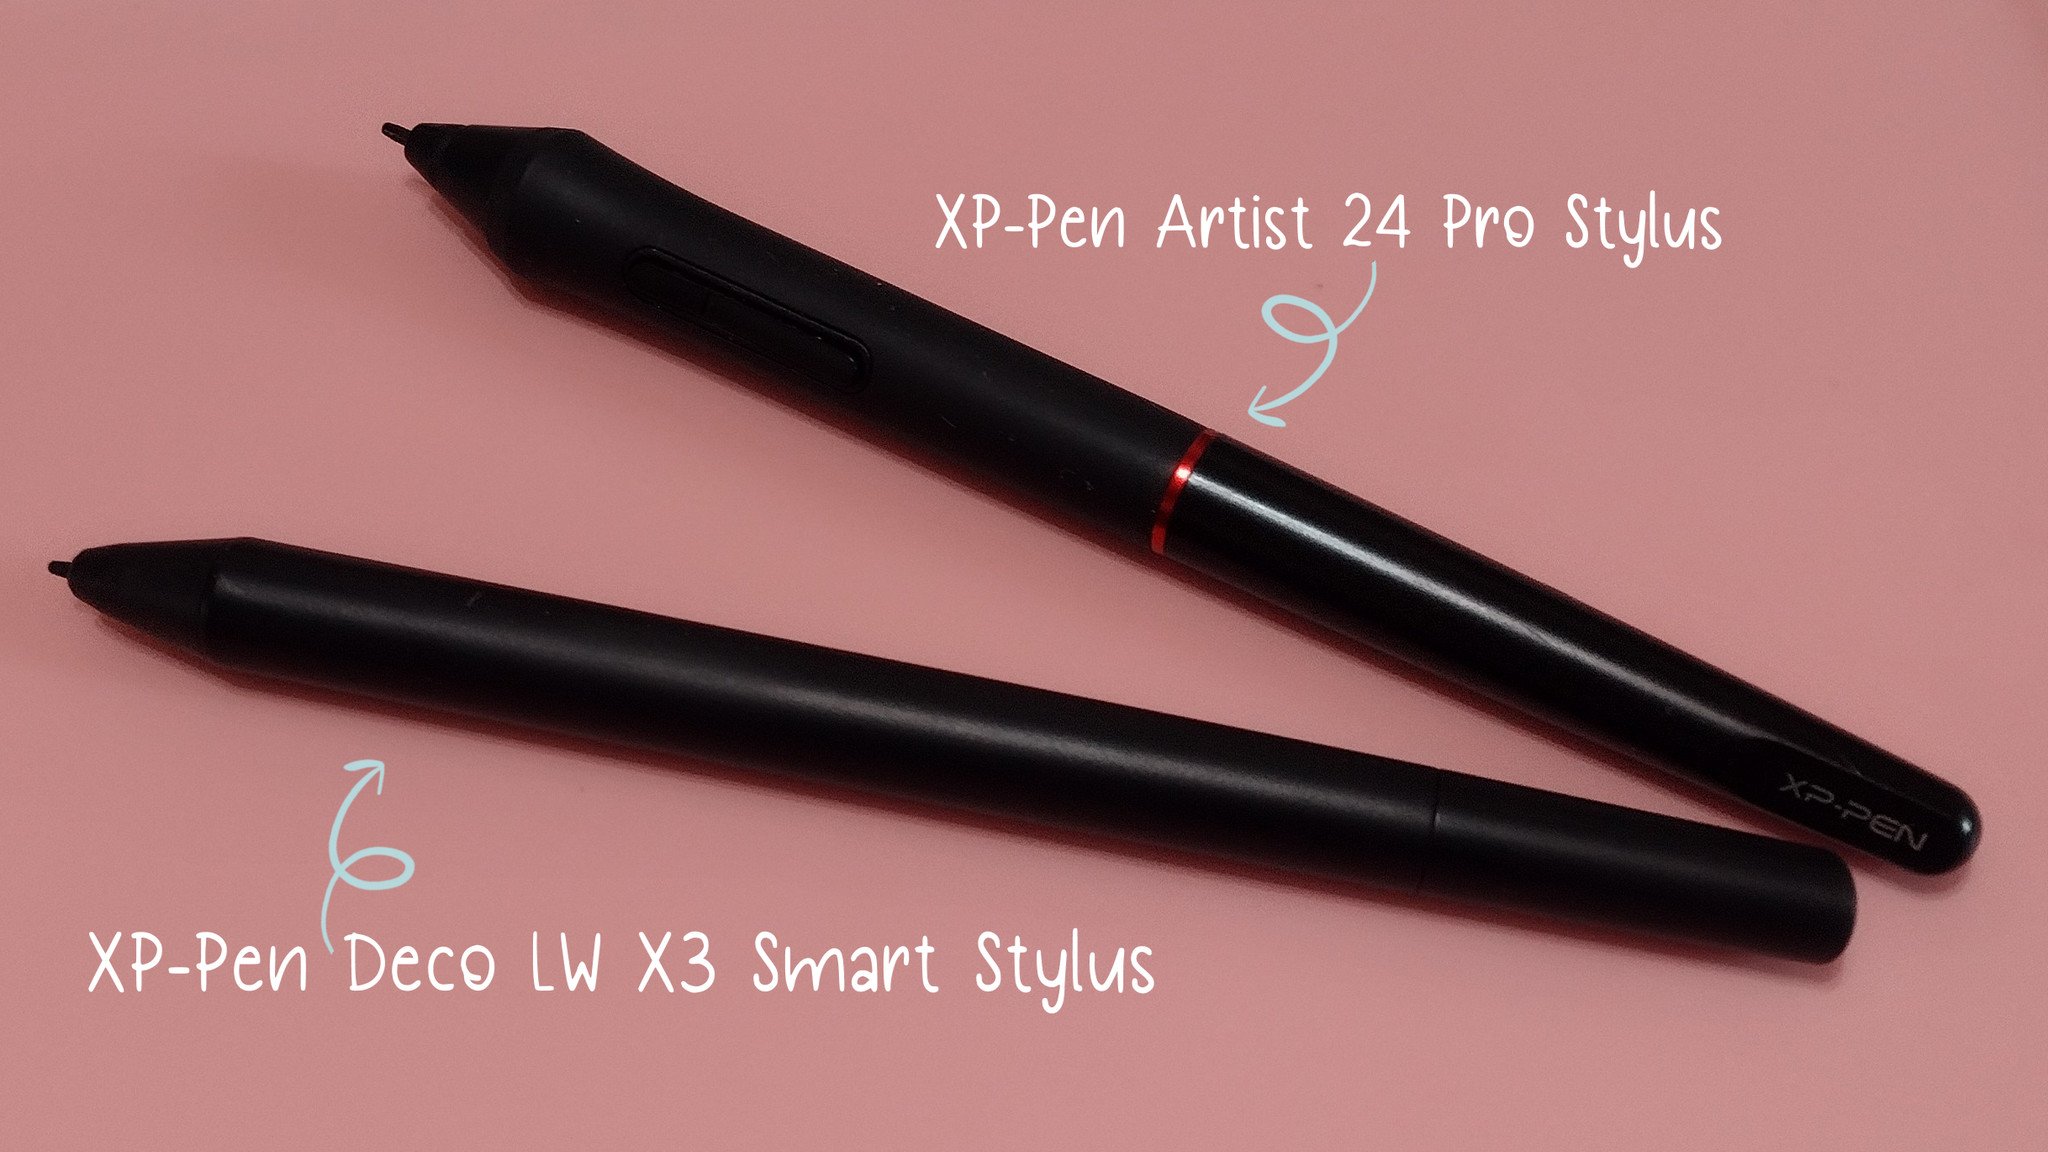 Xp Pen Stylus Comparison Labelled